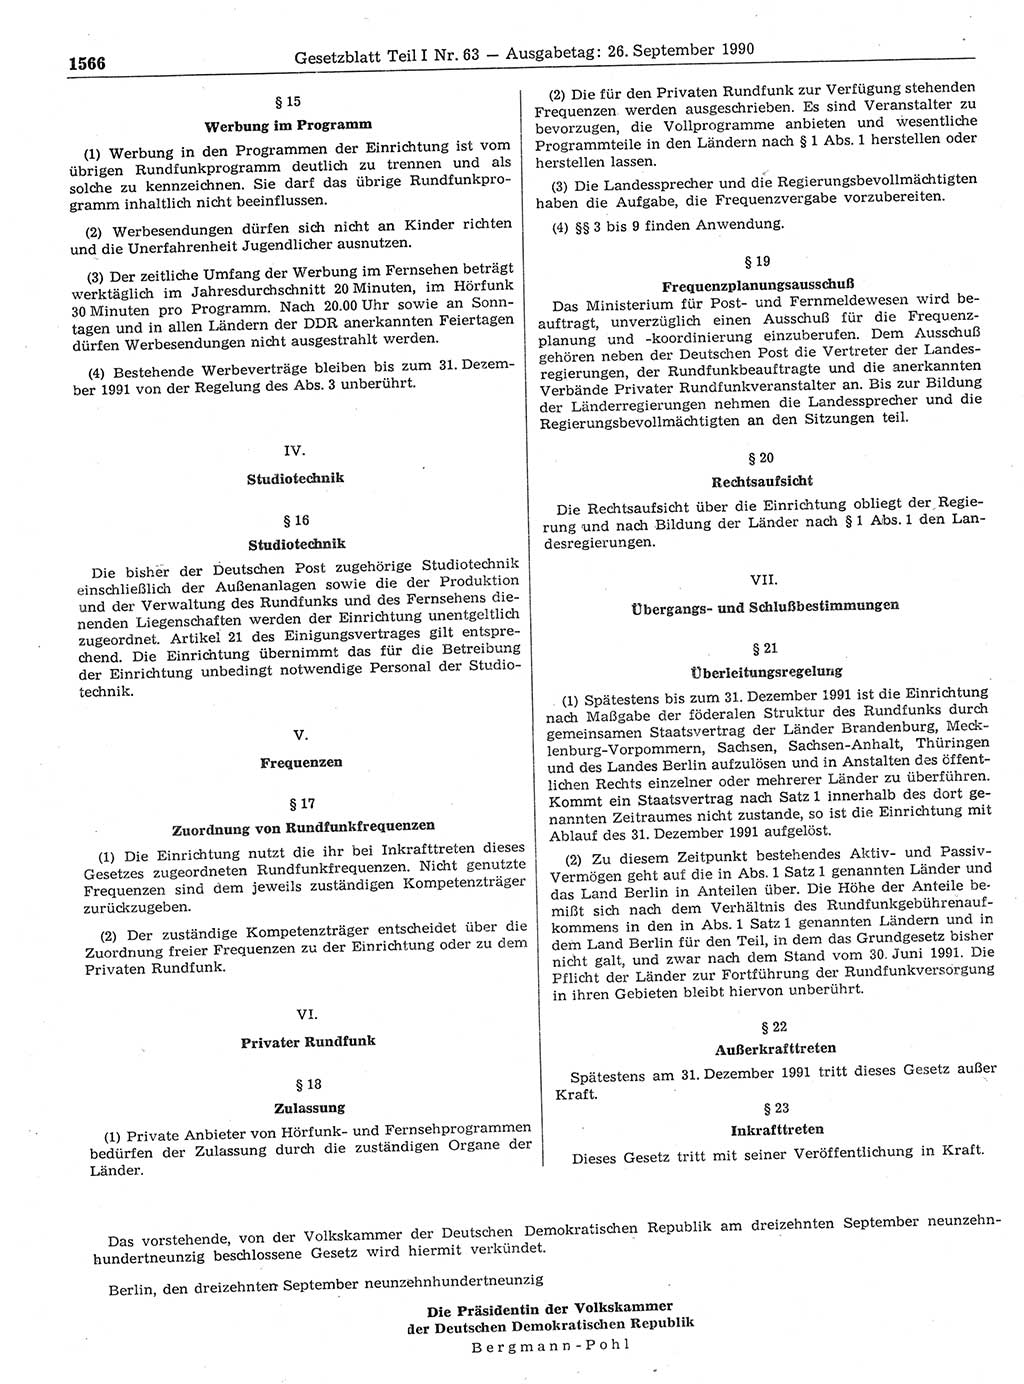 Gesetzblatt (GBl.) der Deutschen Demokratischen Republik (DDR) Teil Ⅰ 1990, Seite 1566 (GBl. DDR Ⅰ 1990, S. 1566)